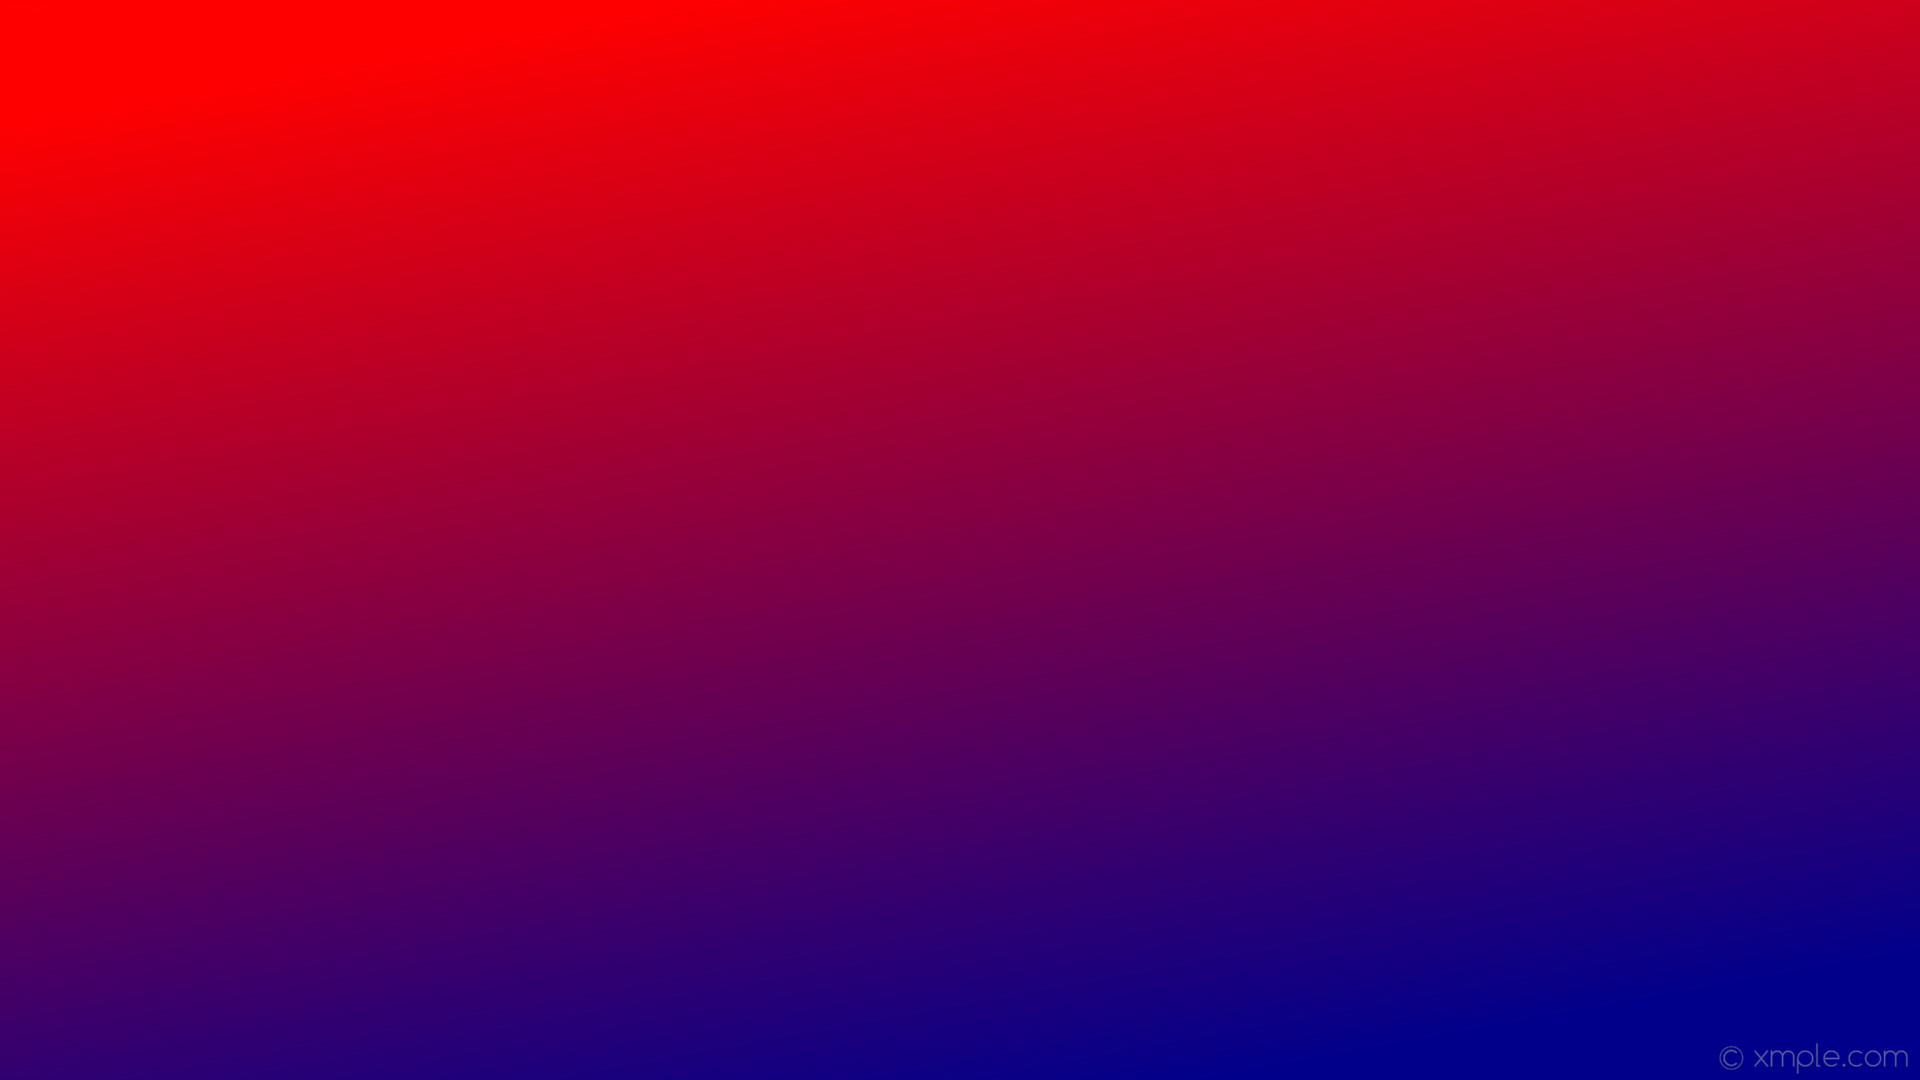 1920x1080 wallpaper gradient blue red linear dark blue #00008b #ff0000 300Â°